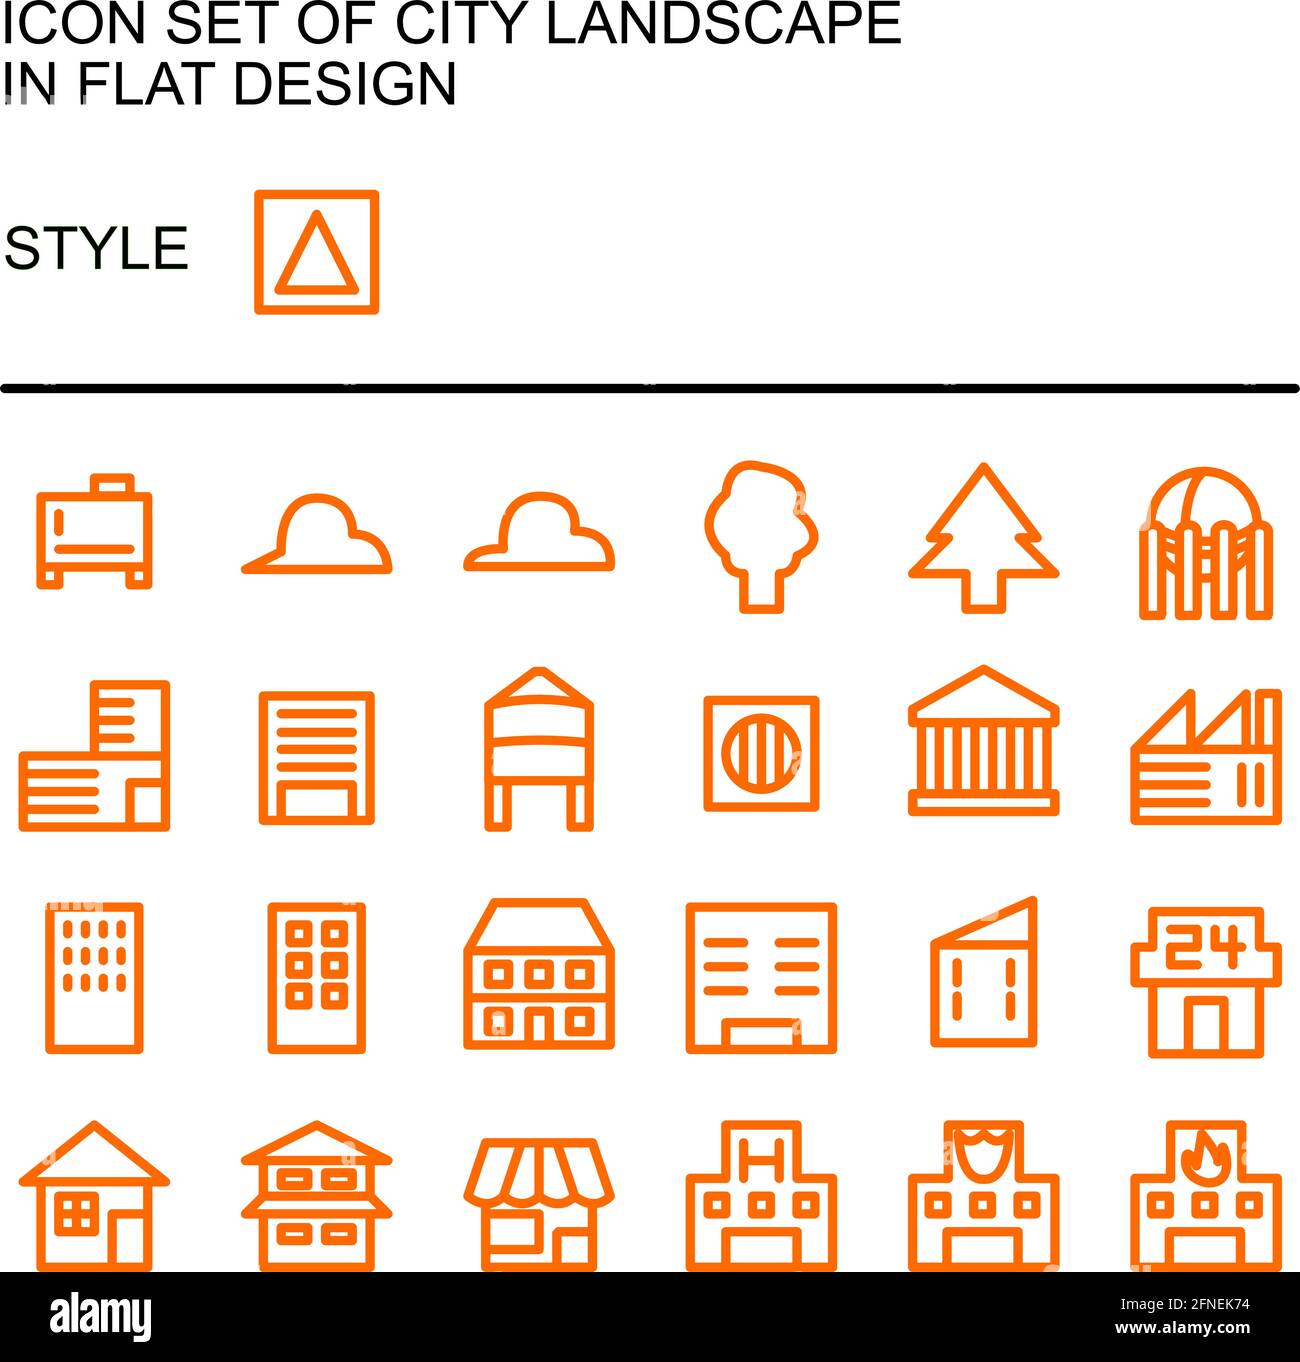 Symbol für die Stadtlandschaft in flachem Design mit orangefarbenen Linien und weißen Füllungen. Stock Vektor